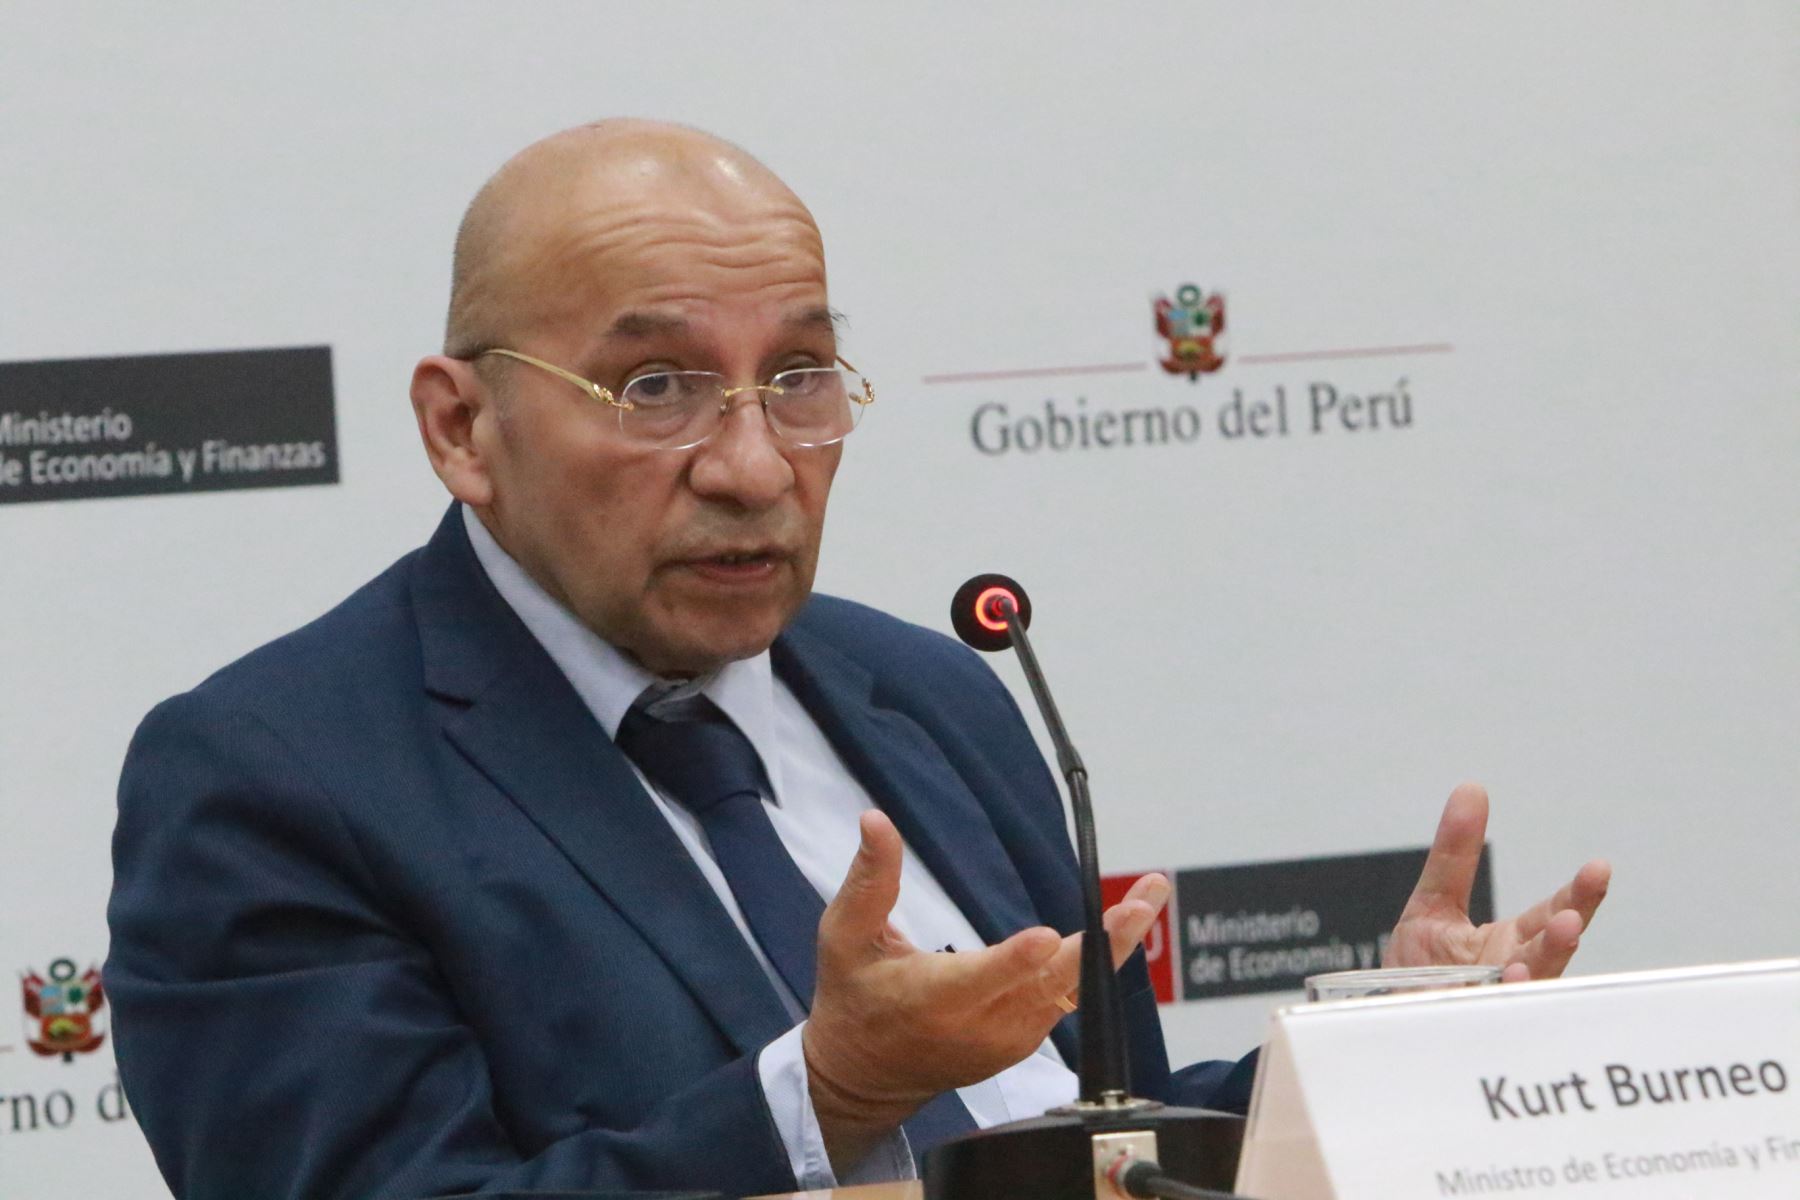 Ministro de Economía y Finanzas, Kurt Burneo. ANDINA/Héctor Vinces